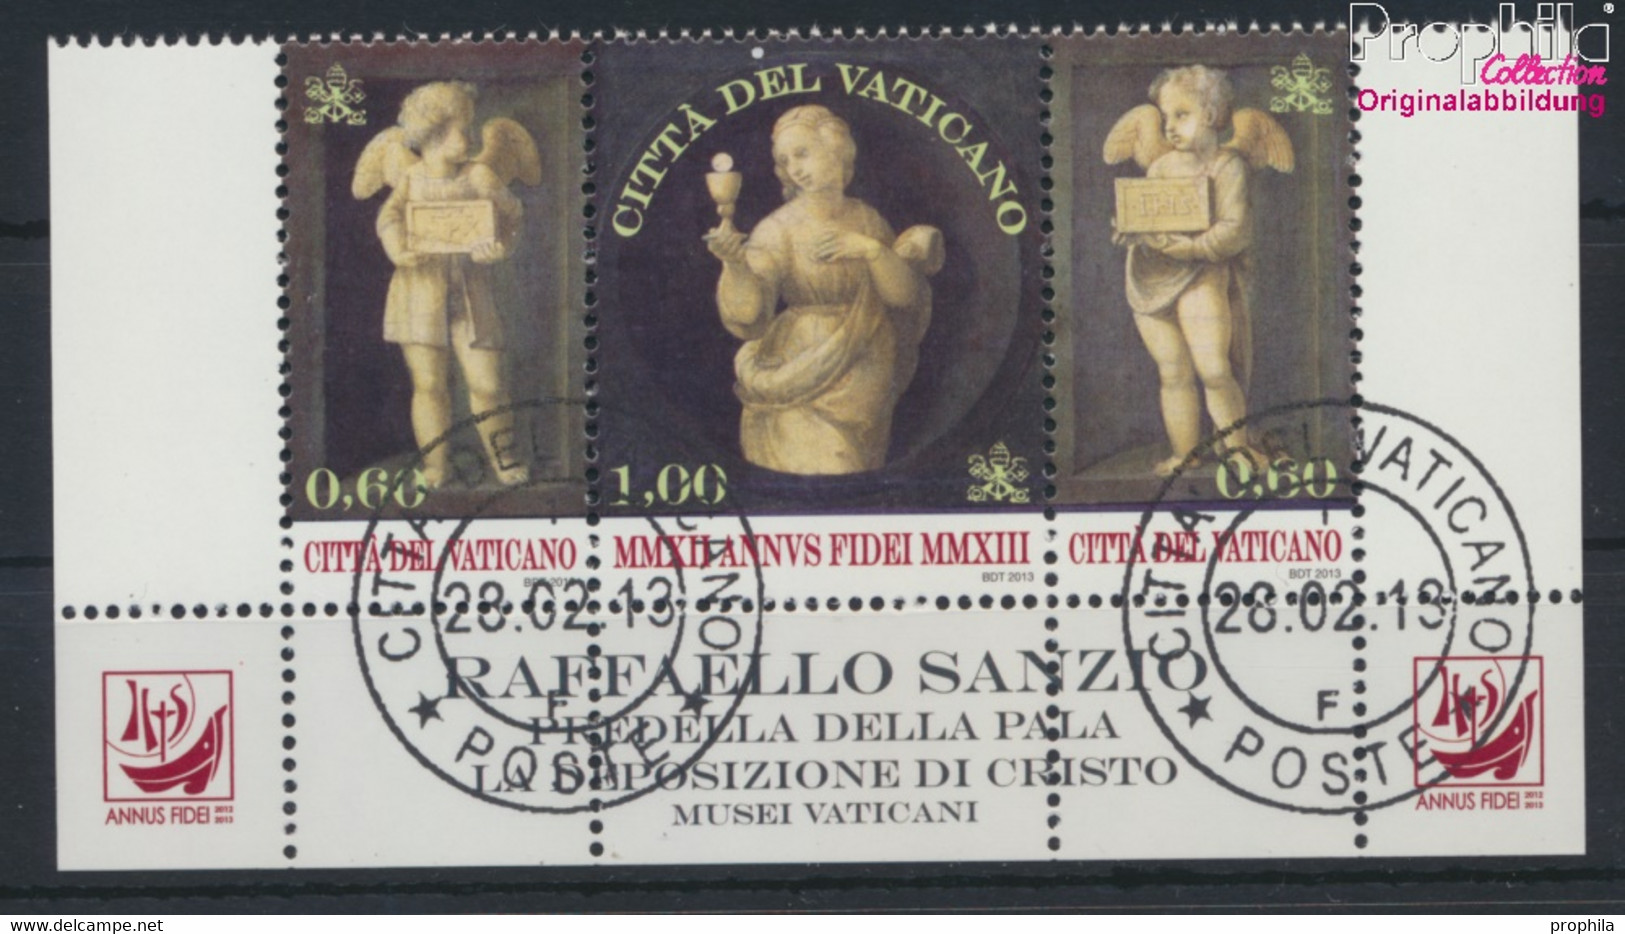 Vatikanstadt 1758-1760 Dreierstreifen (kompl.Ausg.) Gestempelt 2013 Glaubensjahr (9678627 - Usados